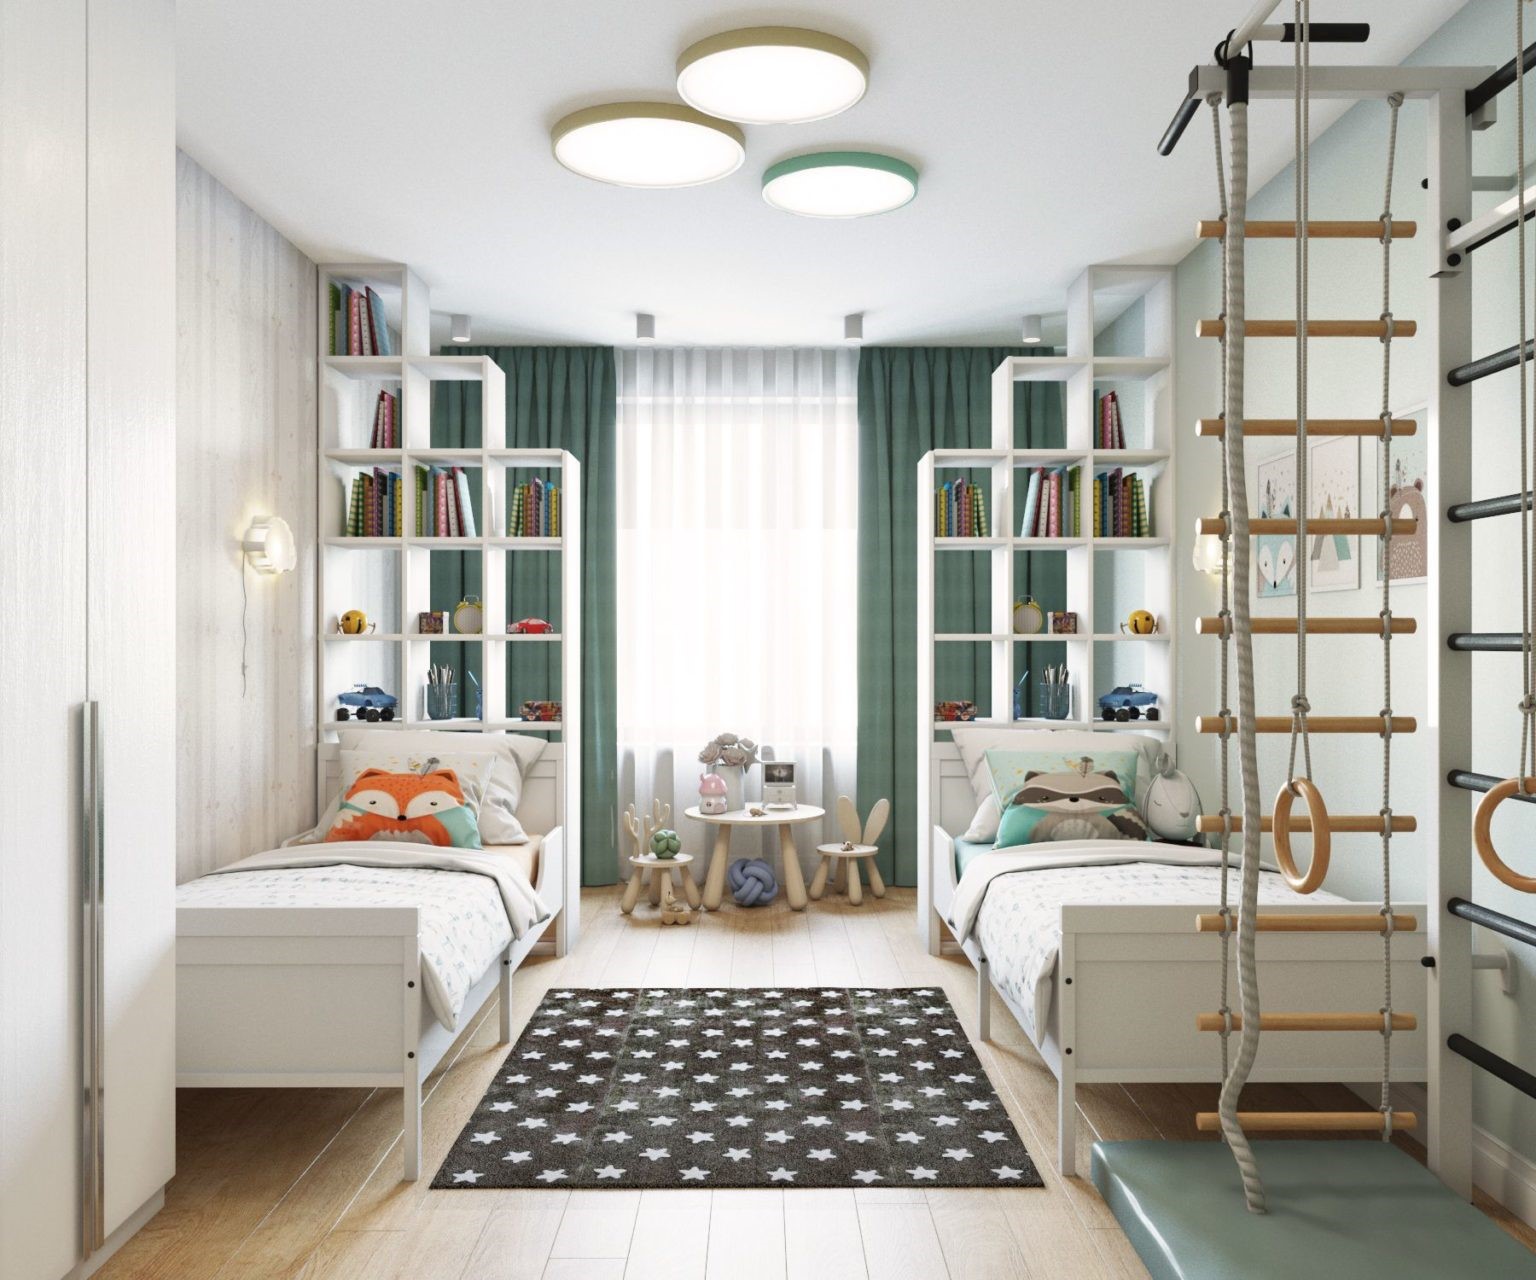 Дизайн комнаты для мальчика: идеи, мебель, потолки, обои